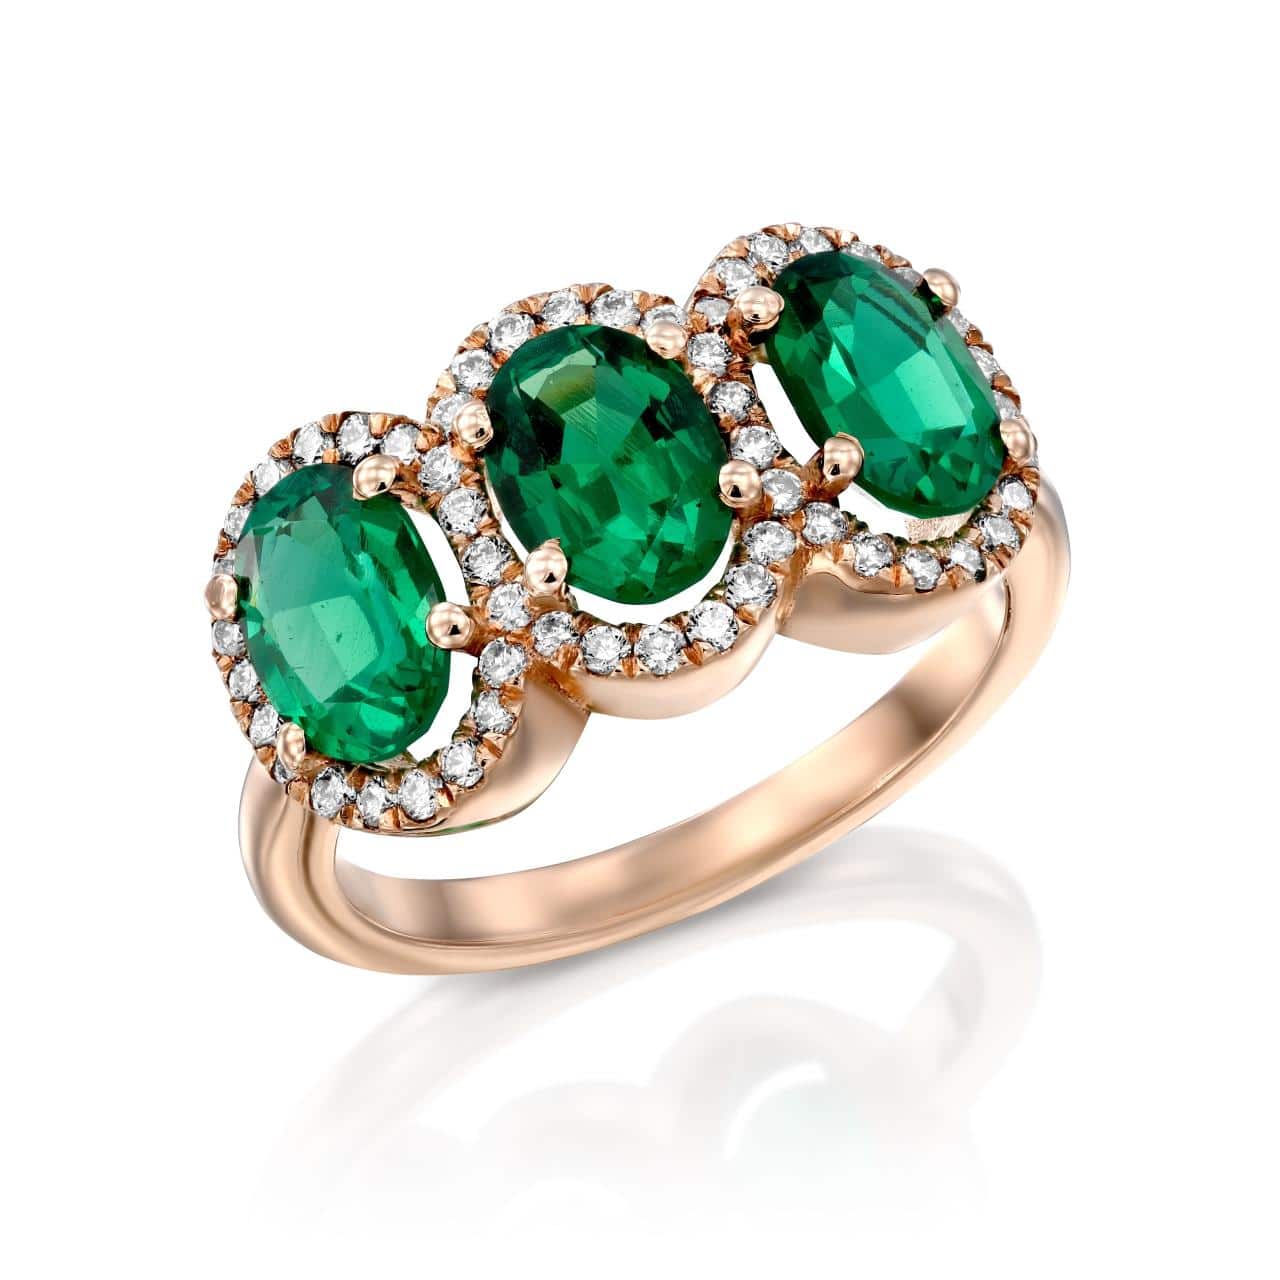 טבעת זהב ורדרד אלגנטית הכוללת שלוש אבני אמרלד בחיתוך אובלי מוקף בהילה של יהלומים נוצצים, טבעת אמלרד דגם Liya ב-35% הנחה